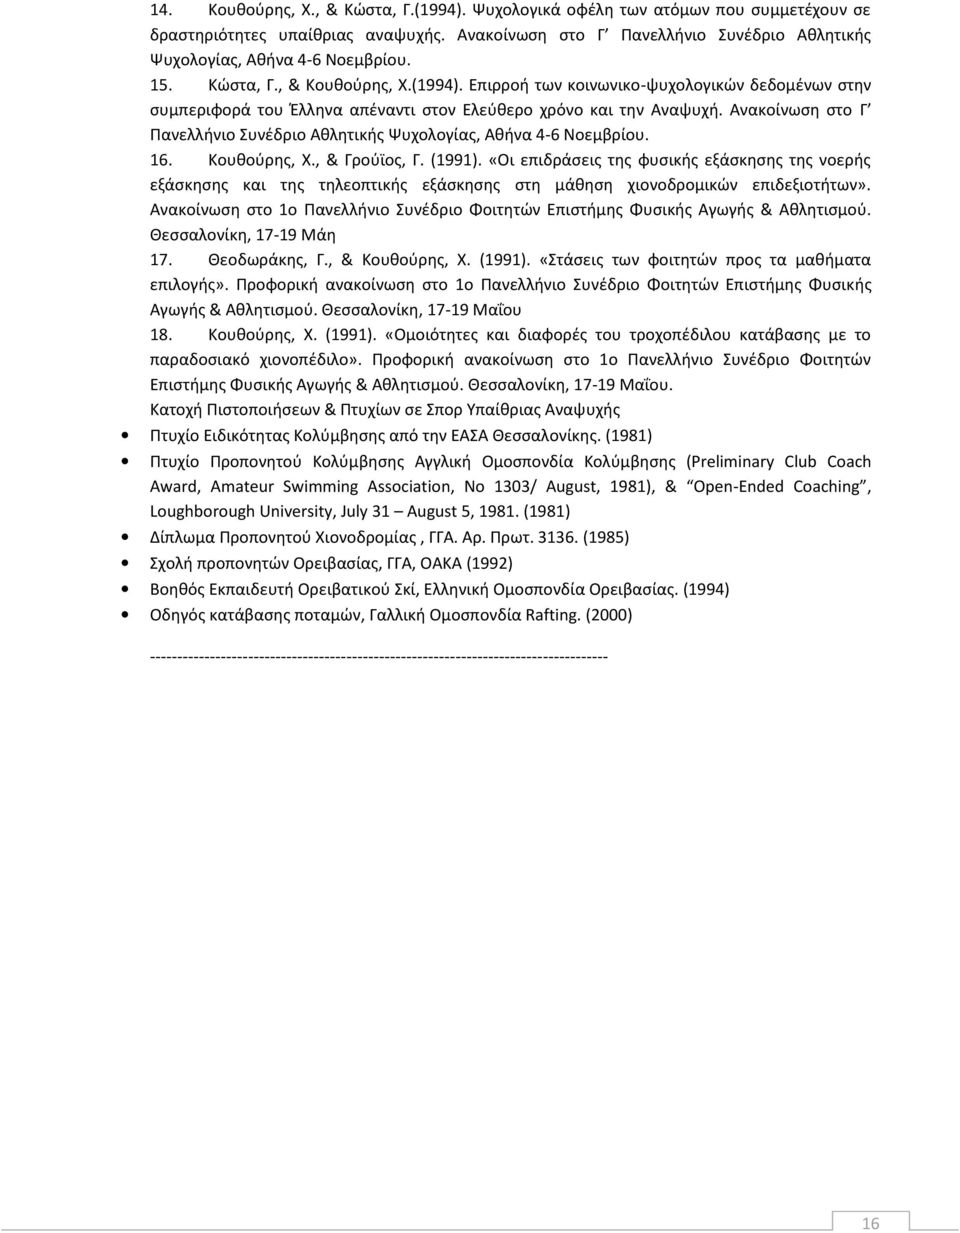 Ανακοίνωση στο Γ Πανελλήνιο Συνέδριο Αθλητικής Ψυχολογίας, Αθήνα 4-6 Νοεμβρίου. 16. Κουθούρης, Χ., & Γρούϊος, Γ. (1991).